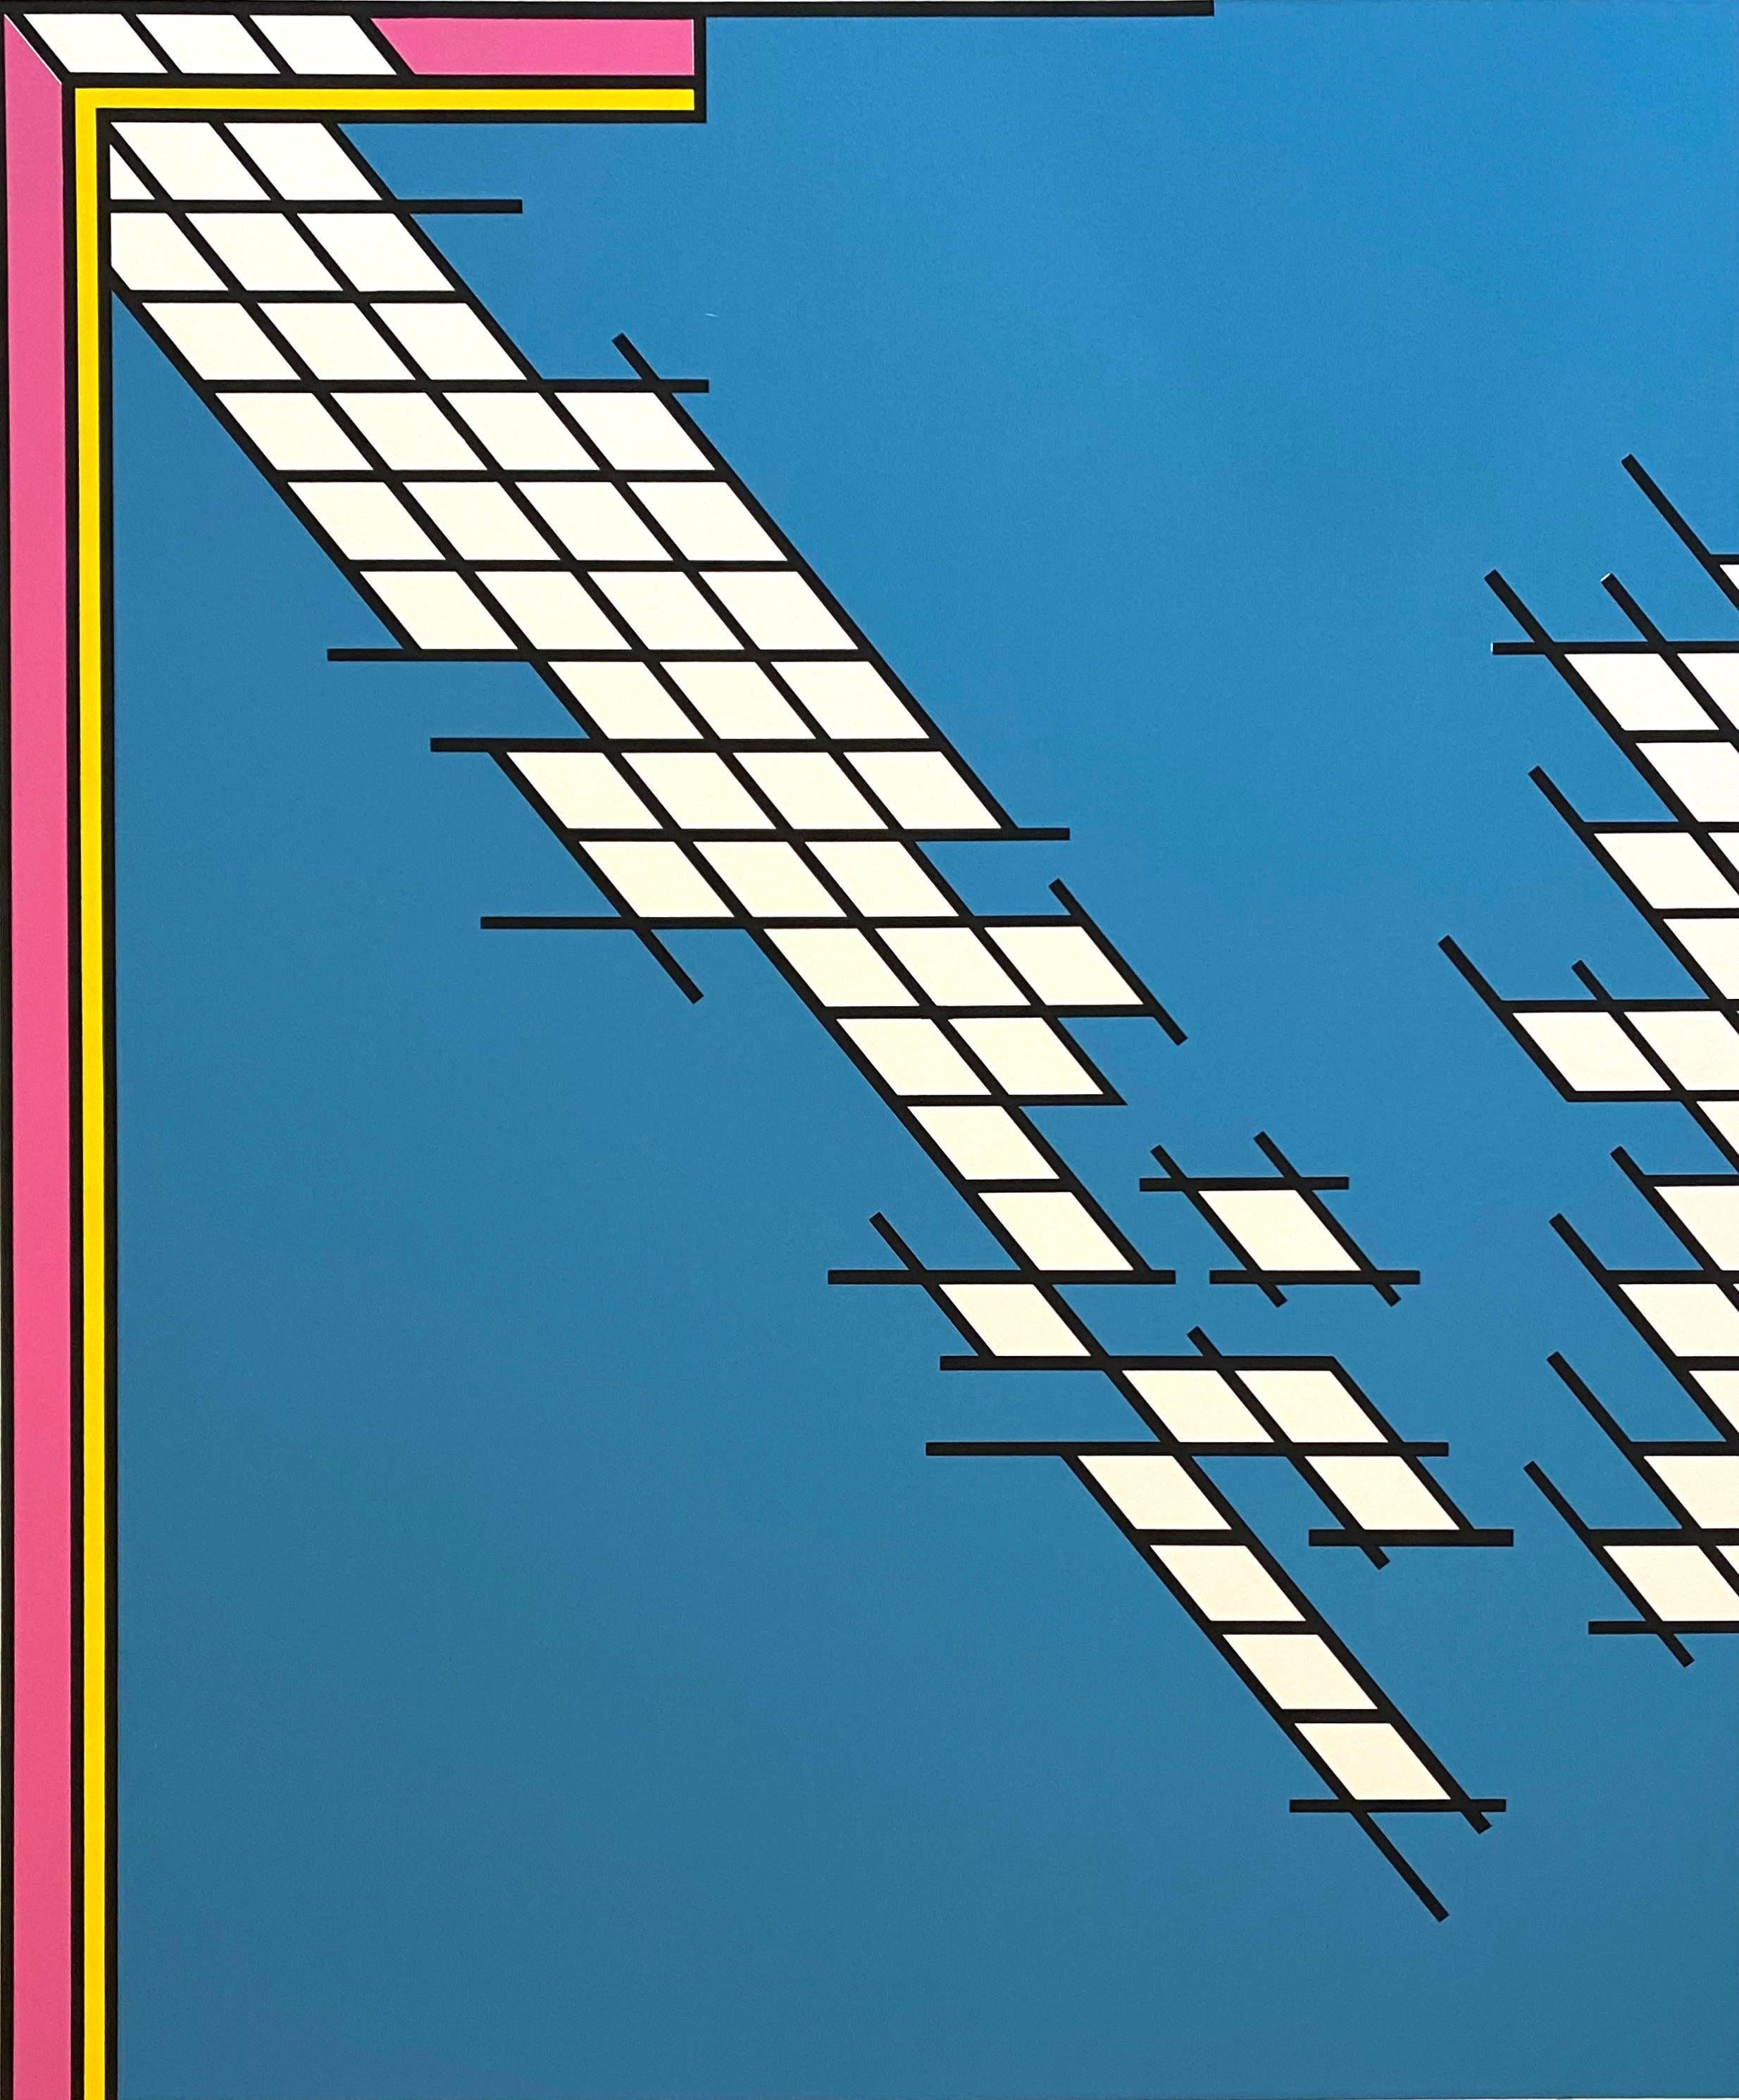 Artiste : Nicholas Krushenick
Titre : Tail Gate
Médium : Sérigraphie en couleurs sur papier vélin
Année : 1978
Edition : 100/200
Taille du cadre : 32 1/2" x 28"
Taille du drap : 31" x 26"
Signé : Signé à la main, numéroté et daté par l'artiste.